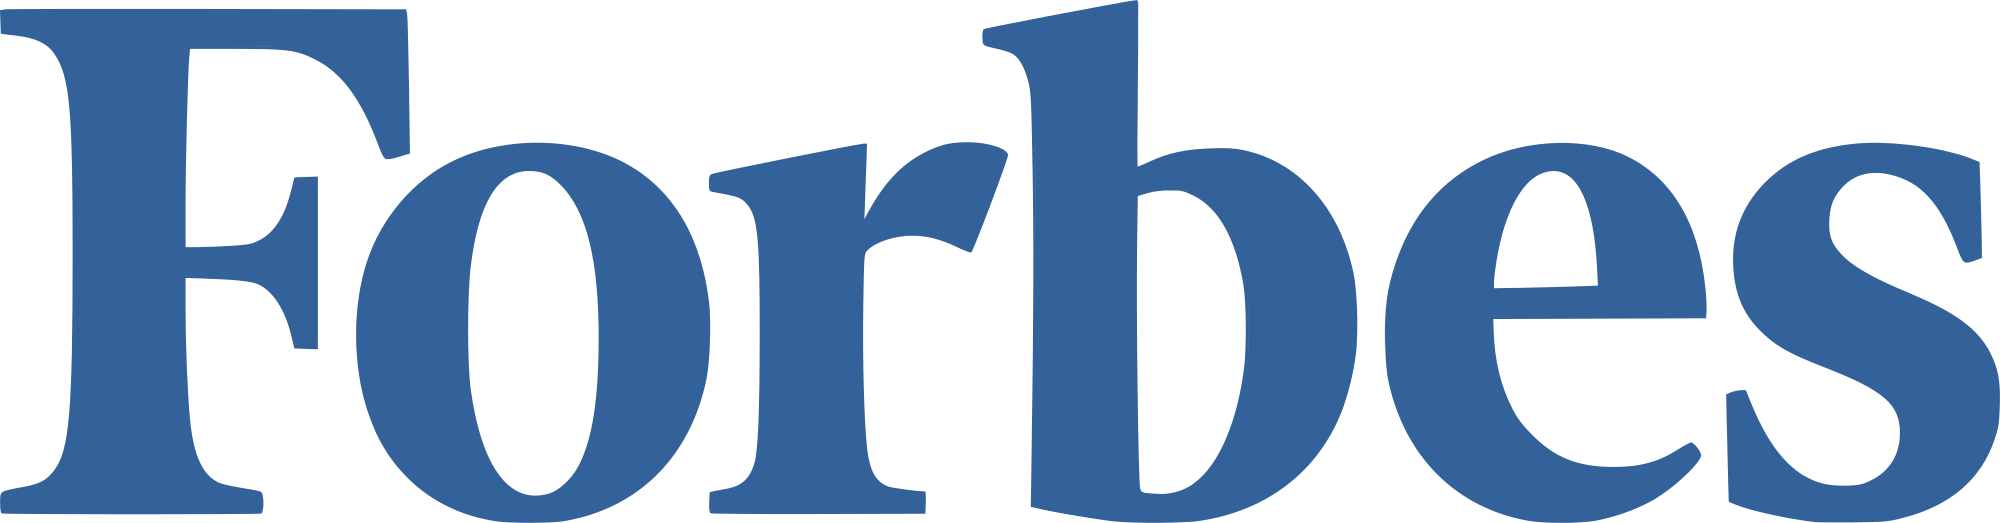 Forbes logo, logotype